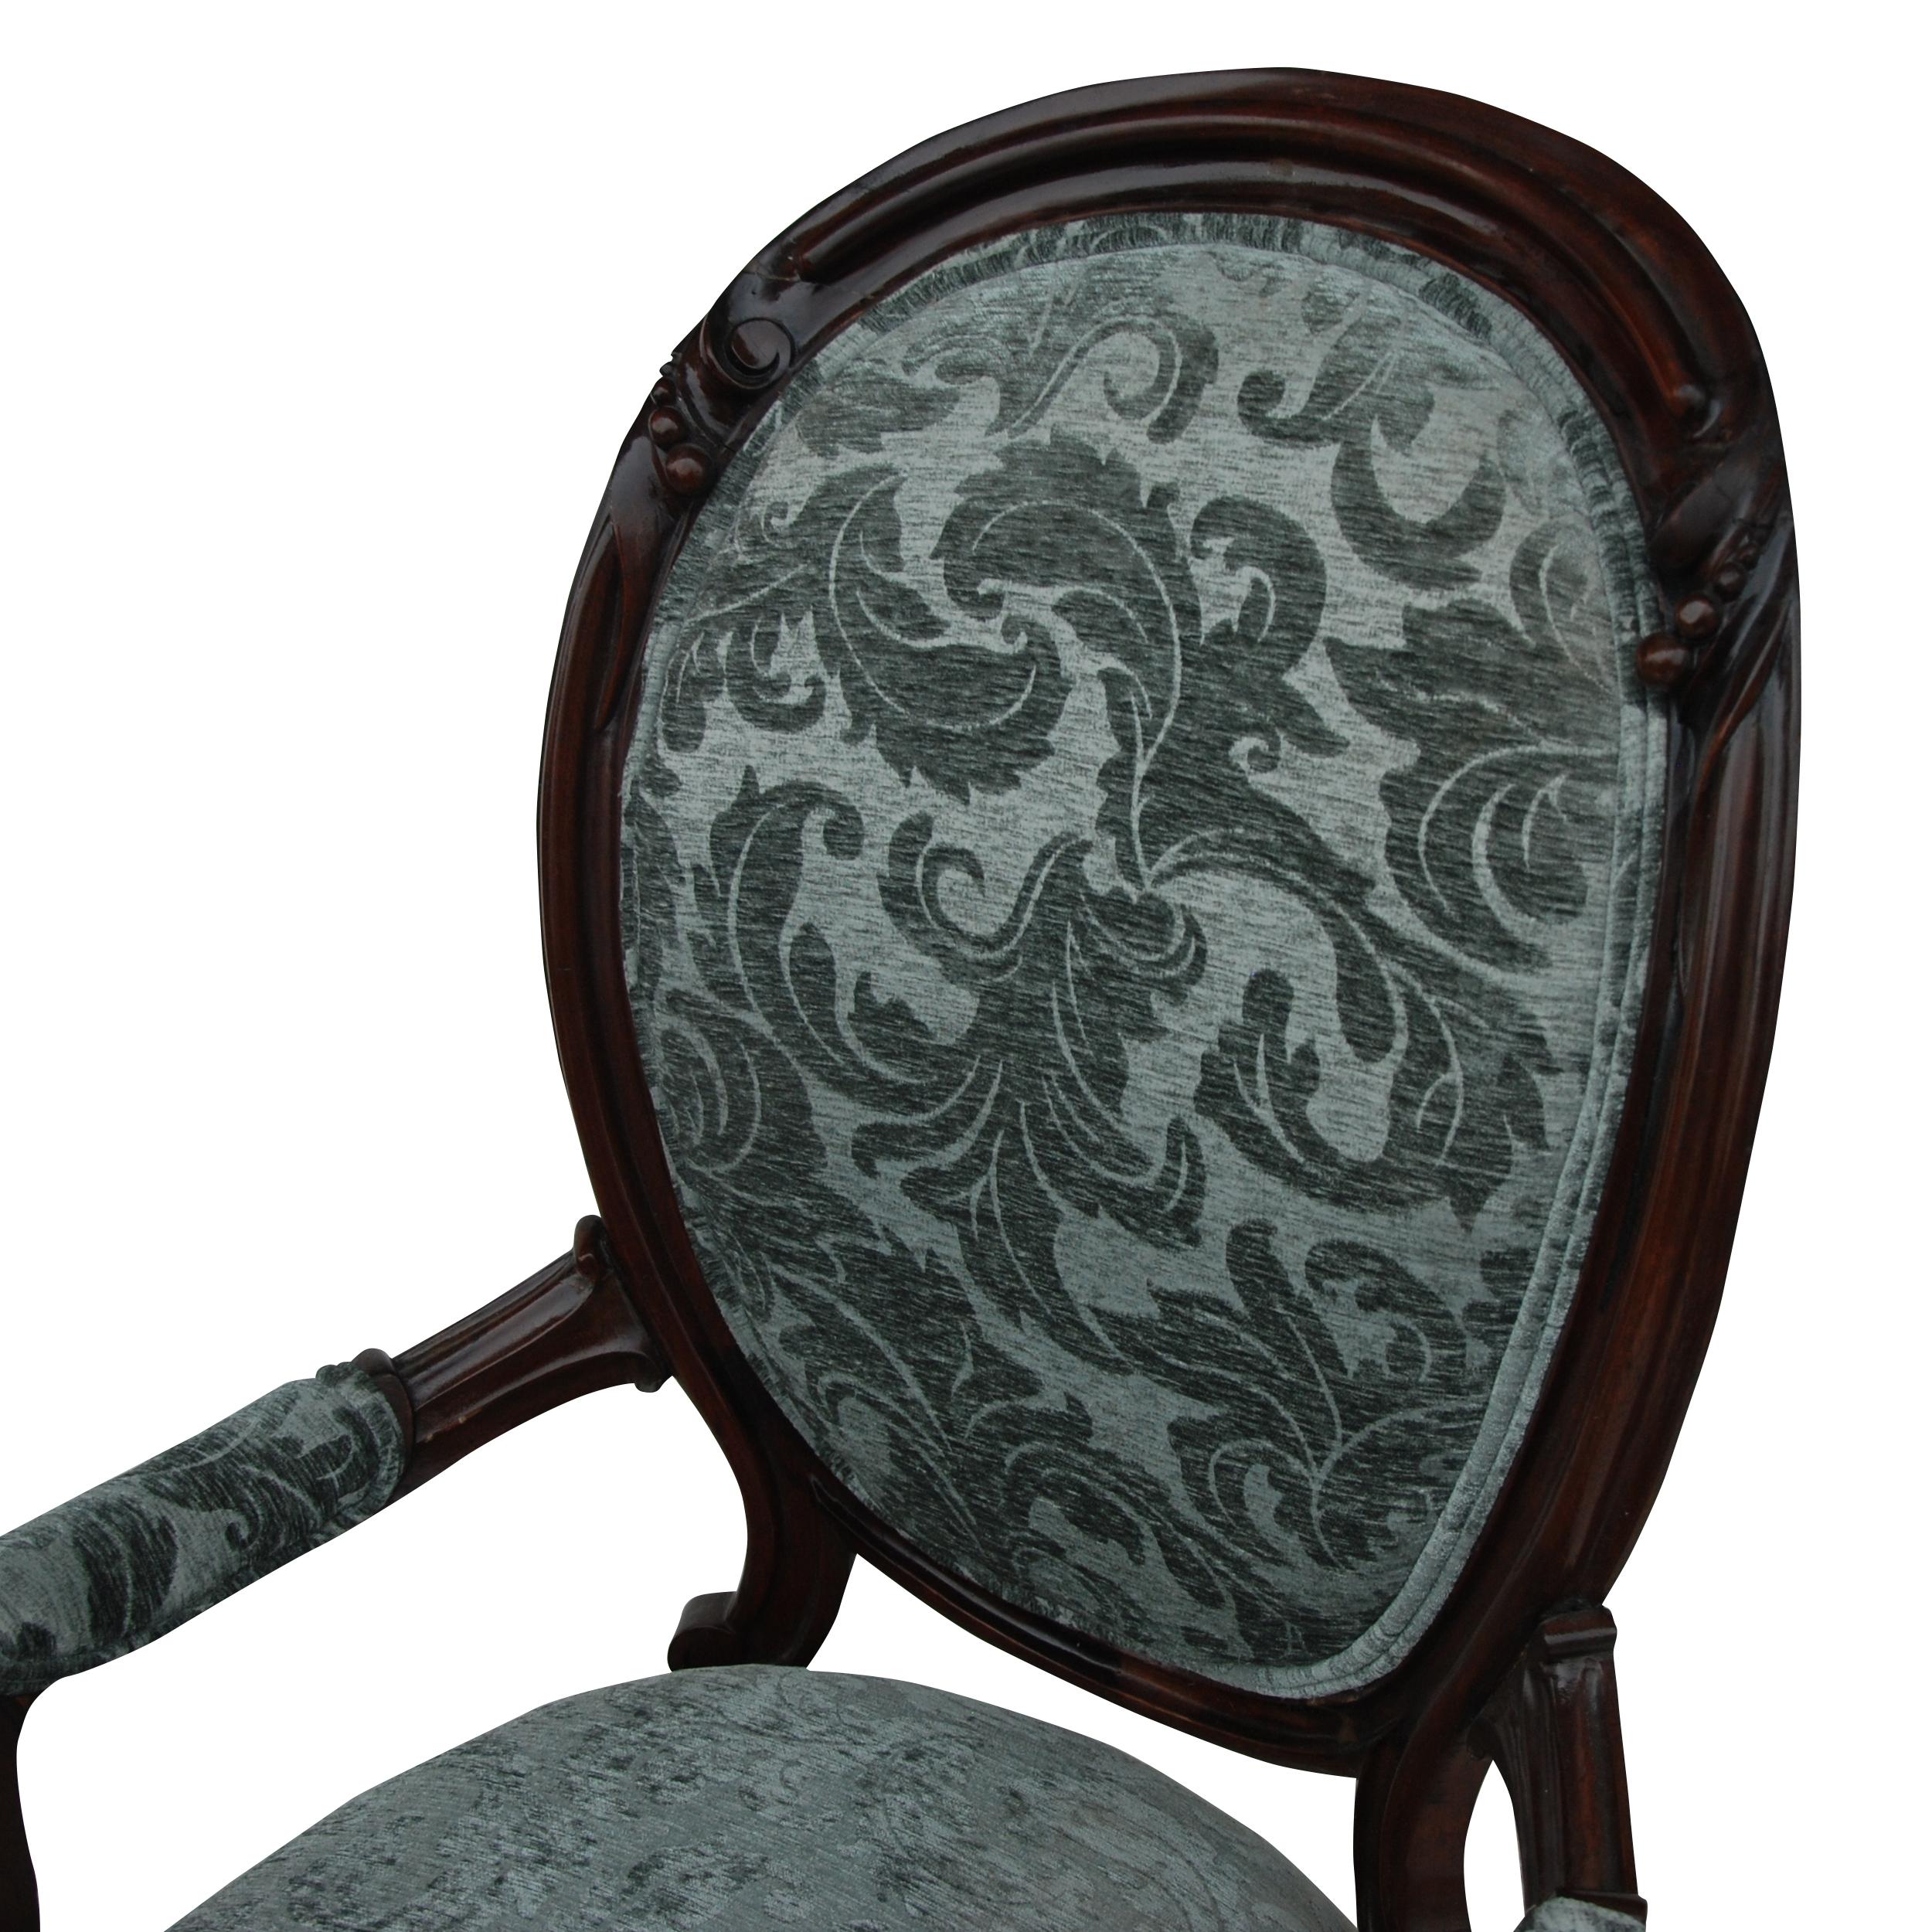 Vieux fauteuil de salon à dossier en cuillère de style victorien

Charmante chaise décorative avec un dossier en cuillère arquée rembourré et une assise rembourrée dans un revêtement damassé floqué. Cadres ébénisés. Bras sculptés et pieds avant à